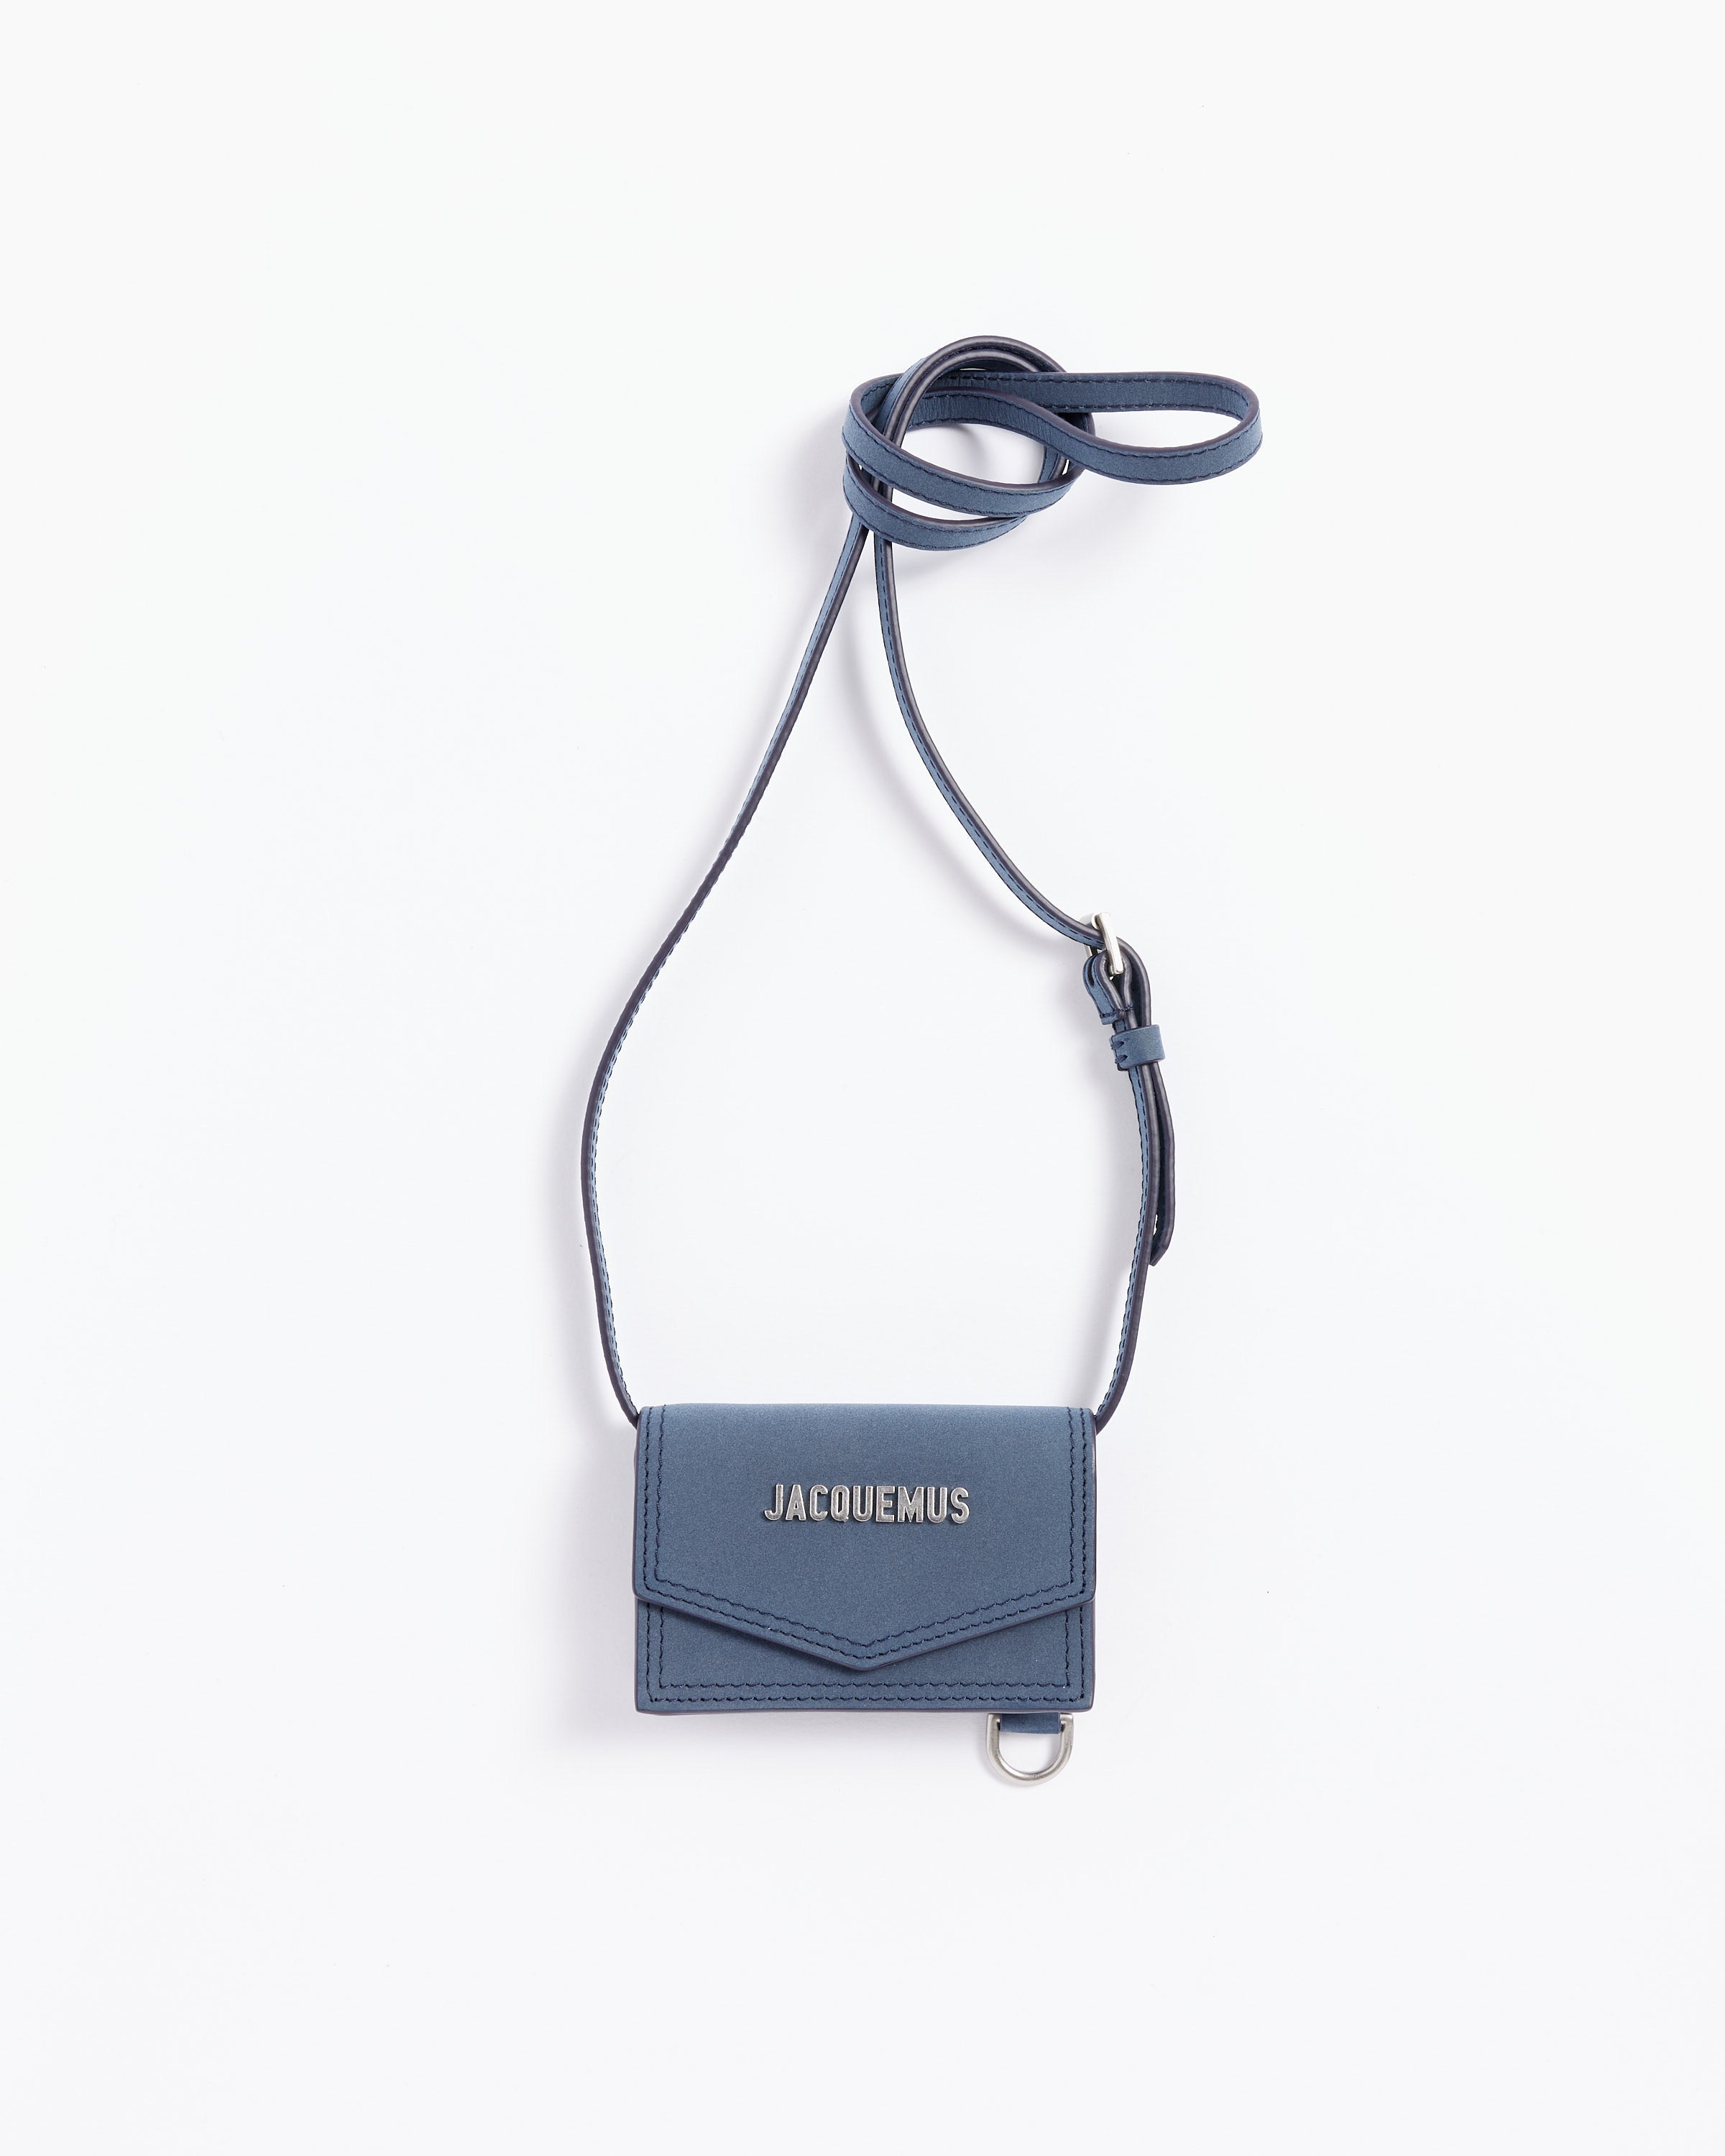 Black 'Le Porte Azur' strapped pouch Jacquemus - StclaircomoShops Spain